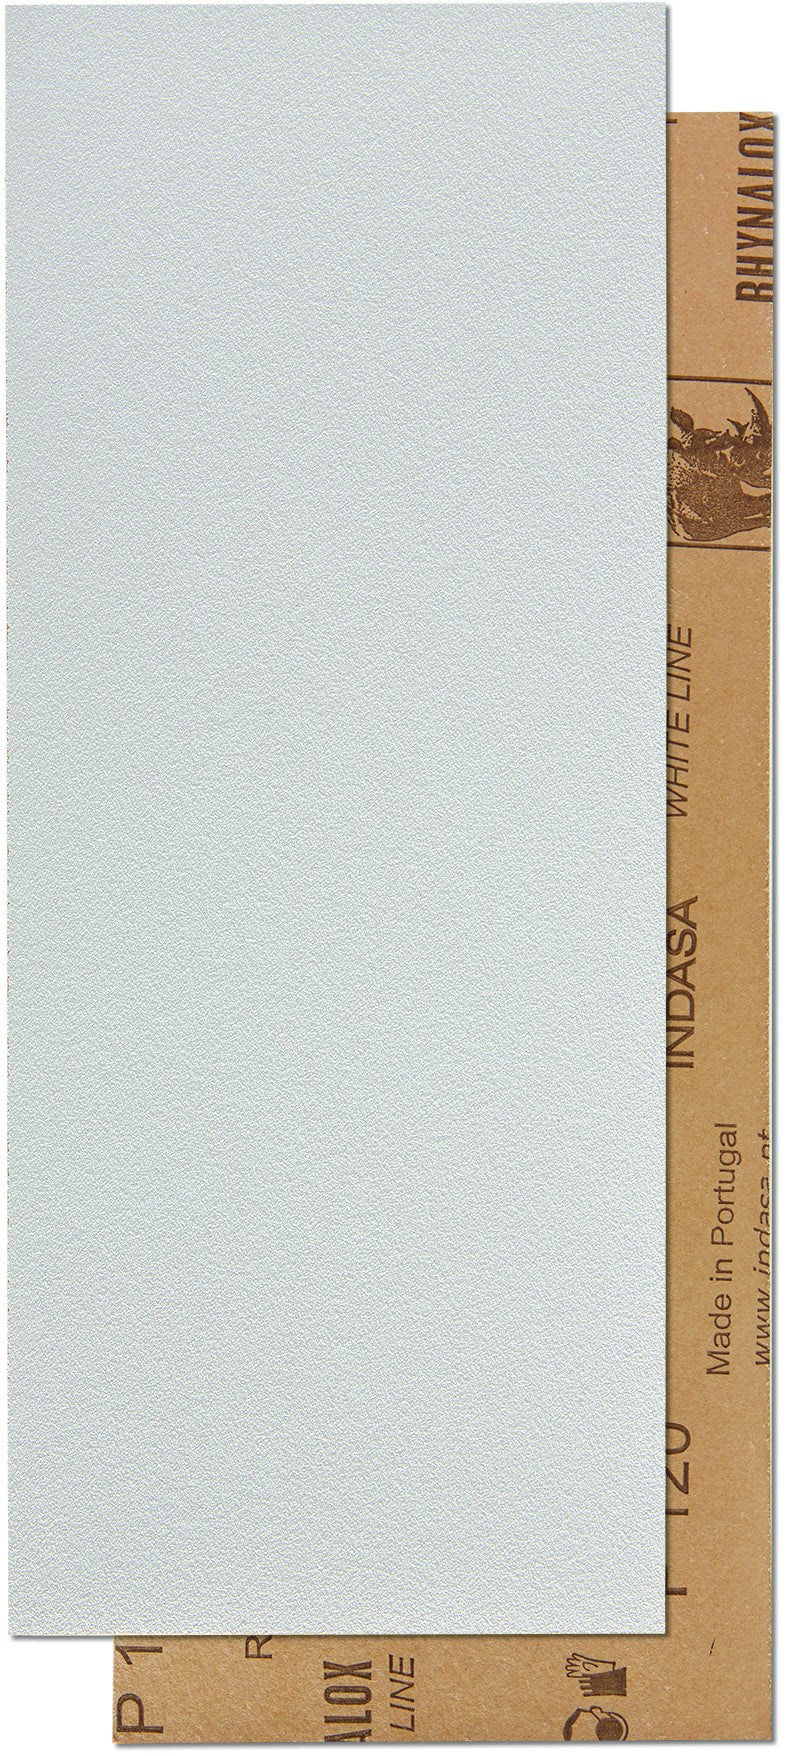 50 x Indasa RHYNALOX WHITE LINE Schleifstreifen 115 x 280mm, Rutscherstreifen, Schleifblätter